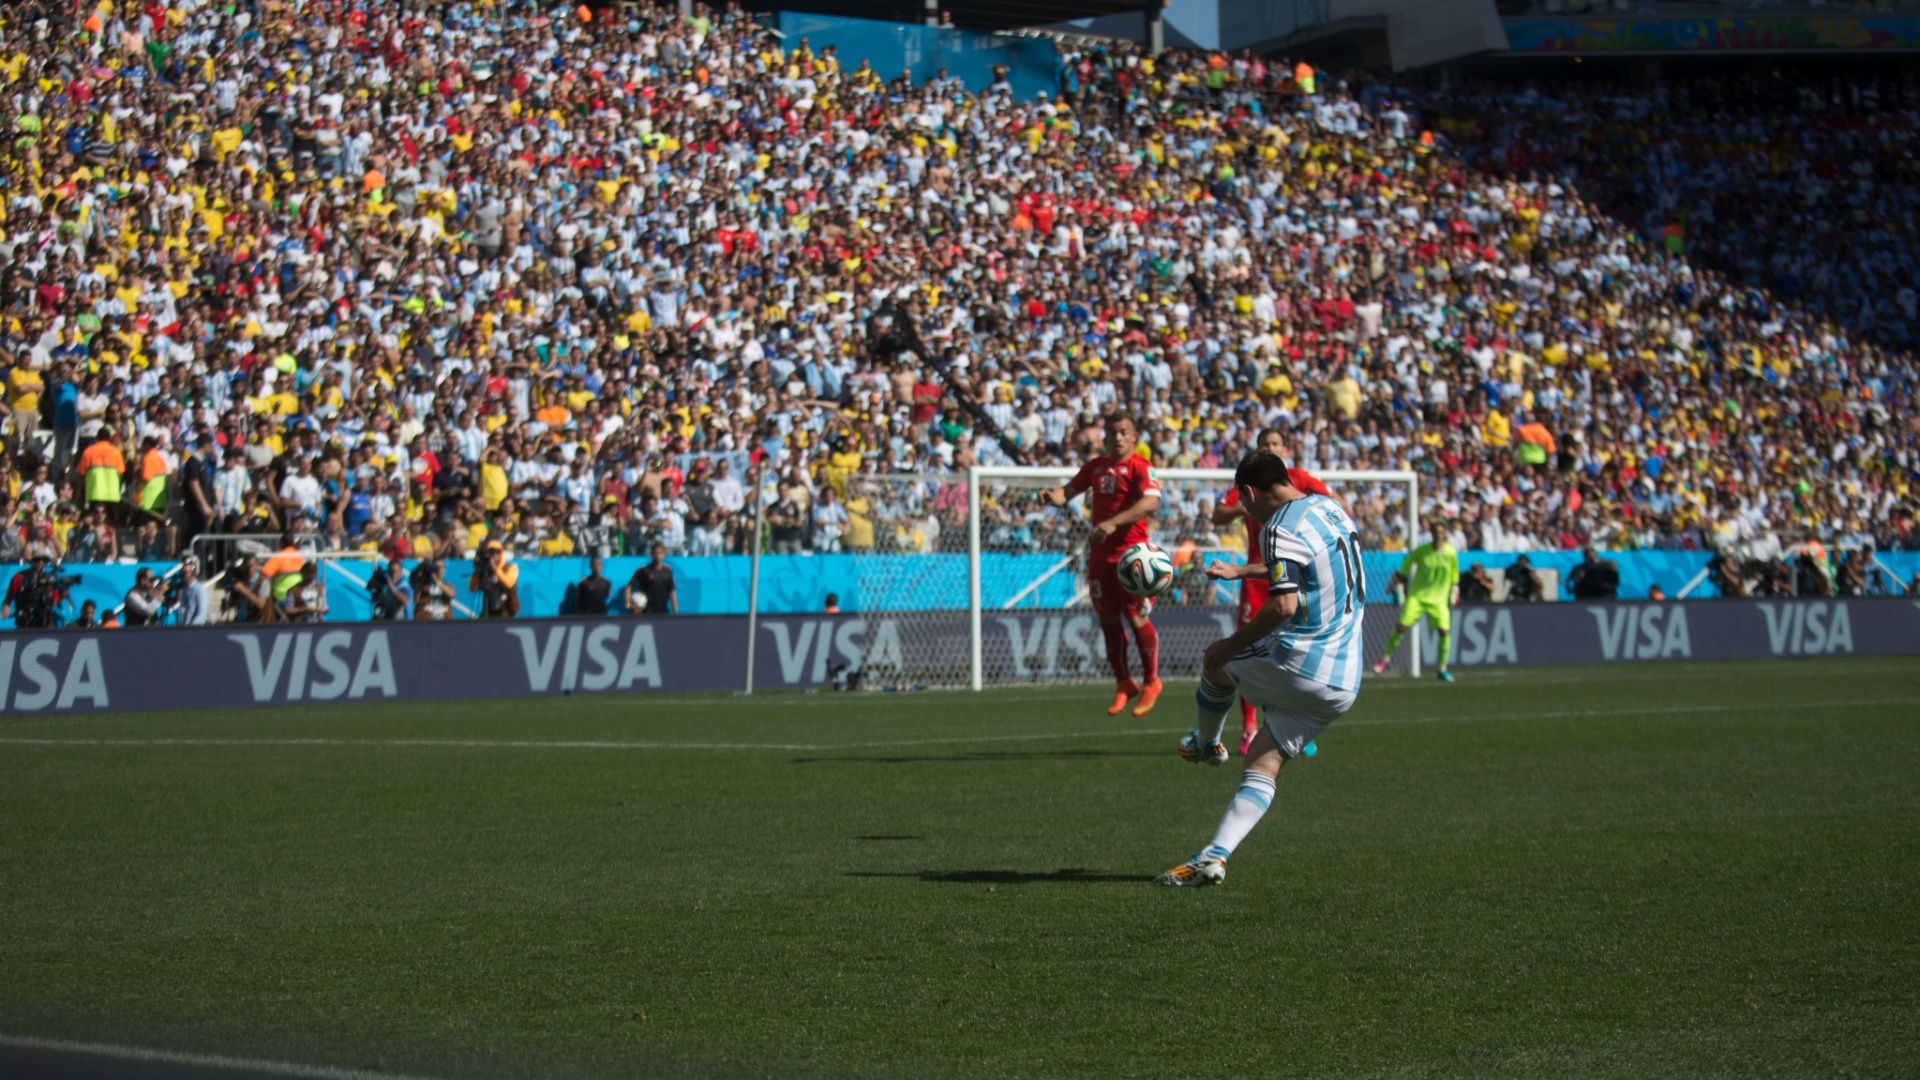 01.jul.2014 - Lionel Messi cruza a bola na área durante a partida entre Argentina e Suíça, no Itaquerão